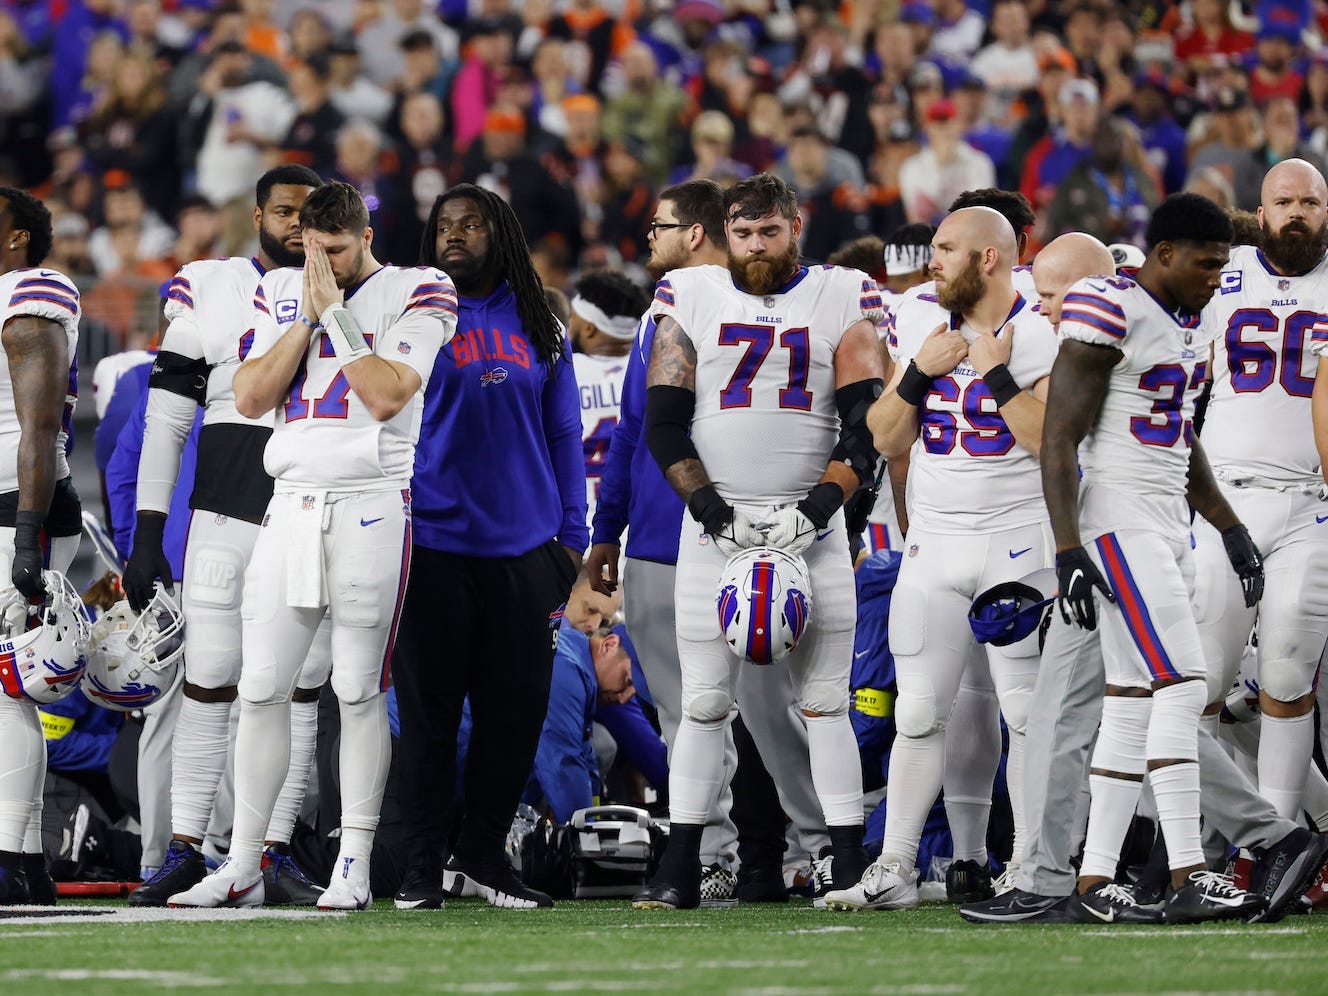 Spieler der Buffalo Bills umringen ein medizinisches Team, das sich um Damar Hamlin nach seinem Herzstillstand auf dem Footballfeld kümmert.